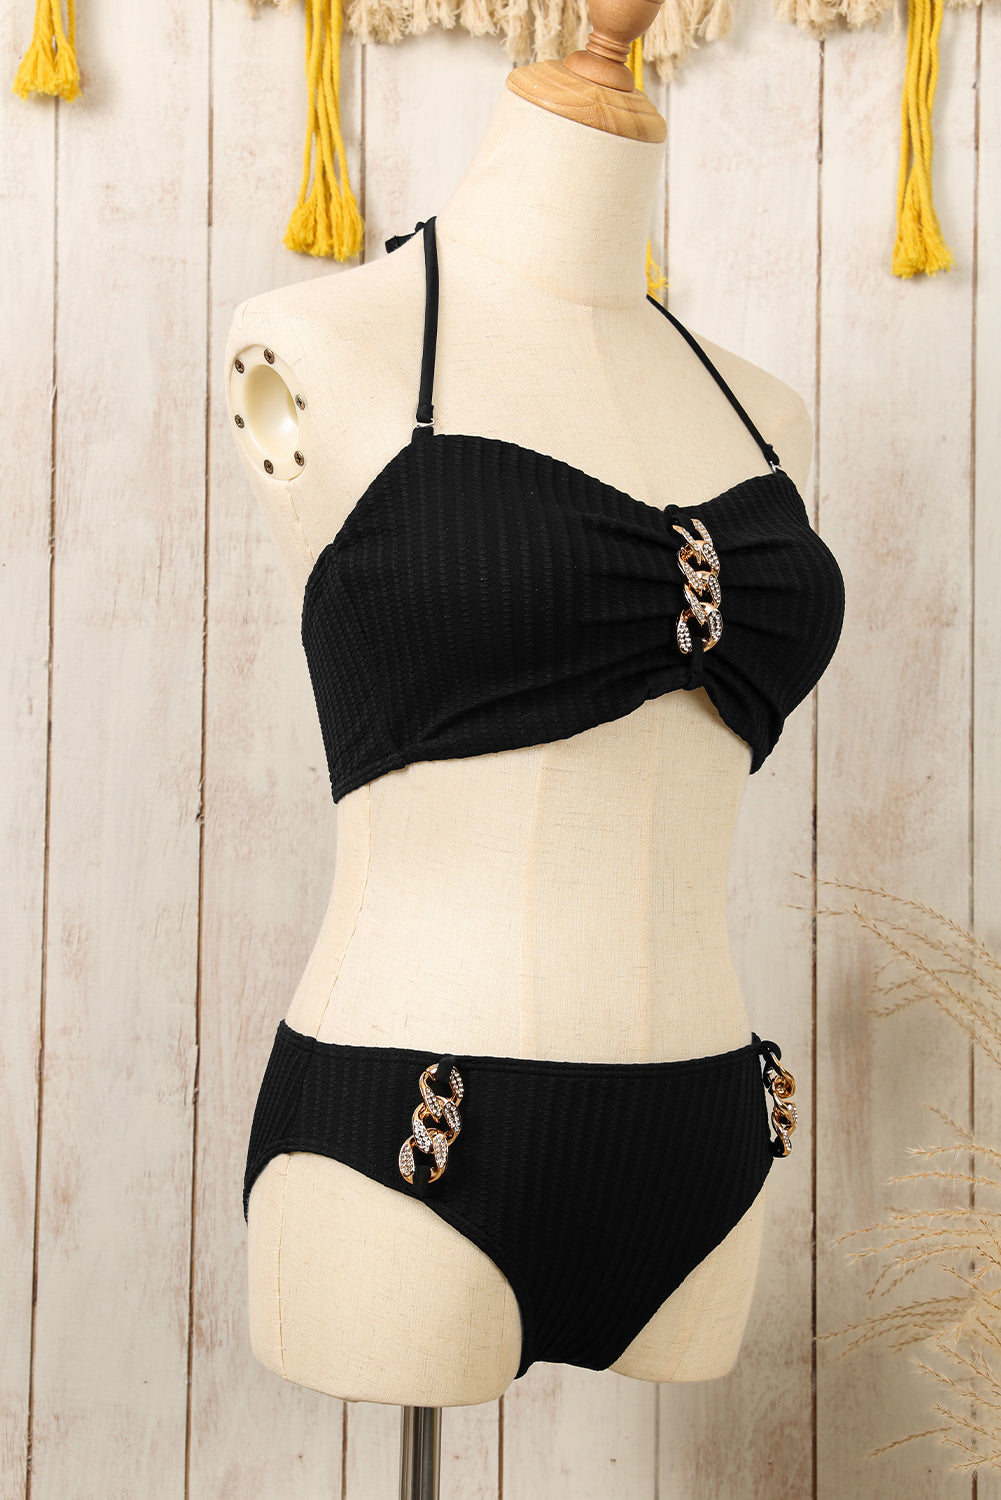 Črni bikini komplet z obročki in teksturiranimi ovratniki